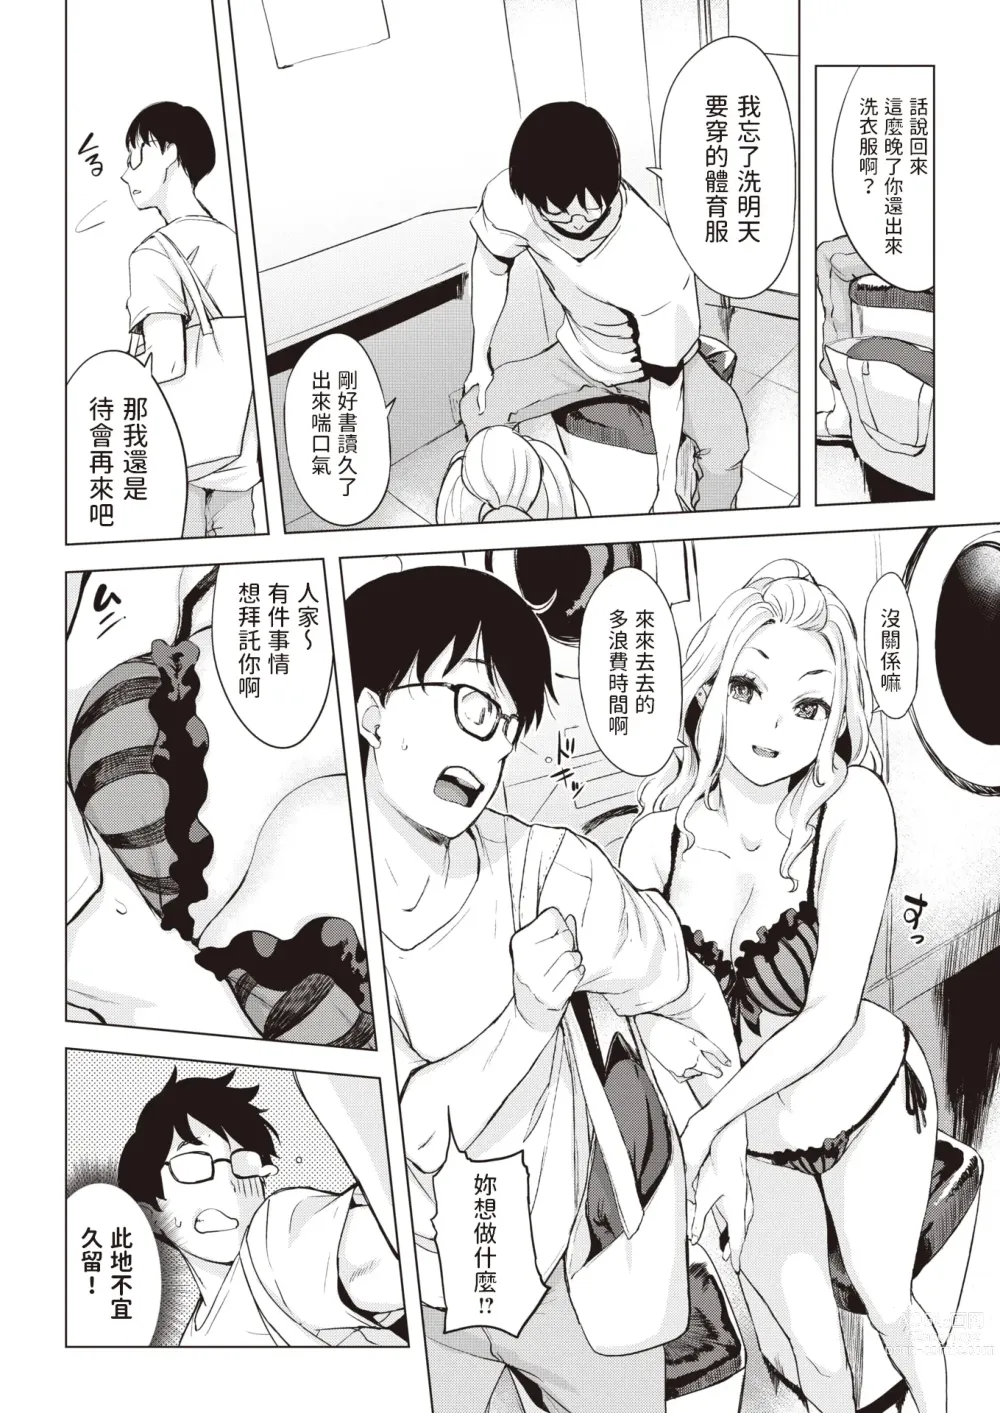 Page 6 of manga Coin Laundry e Ikou!